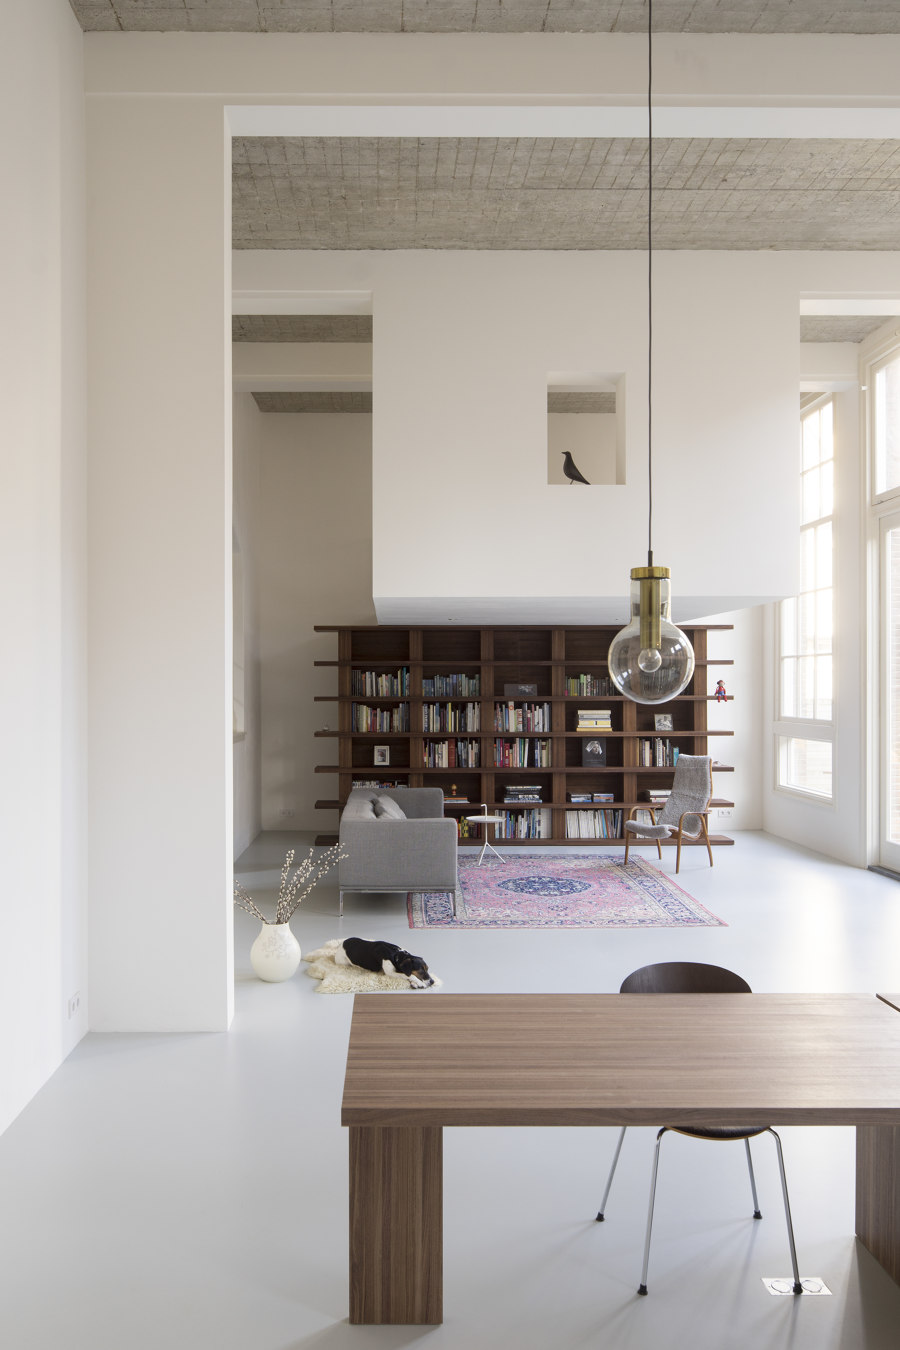 School House by Eklund Terbeek | Living space